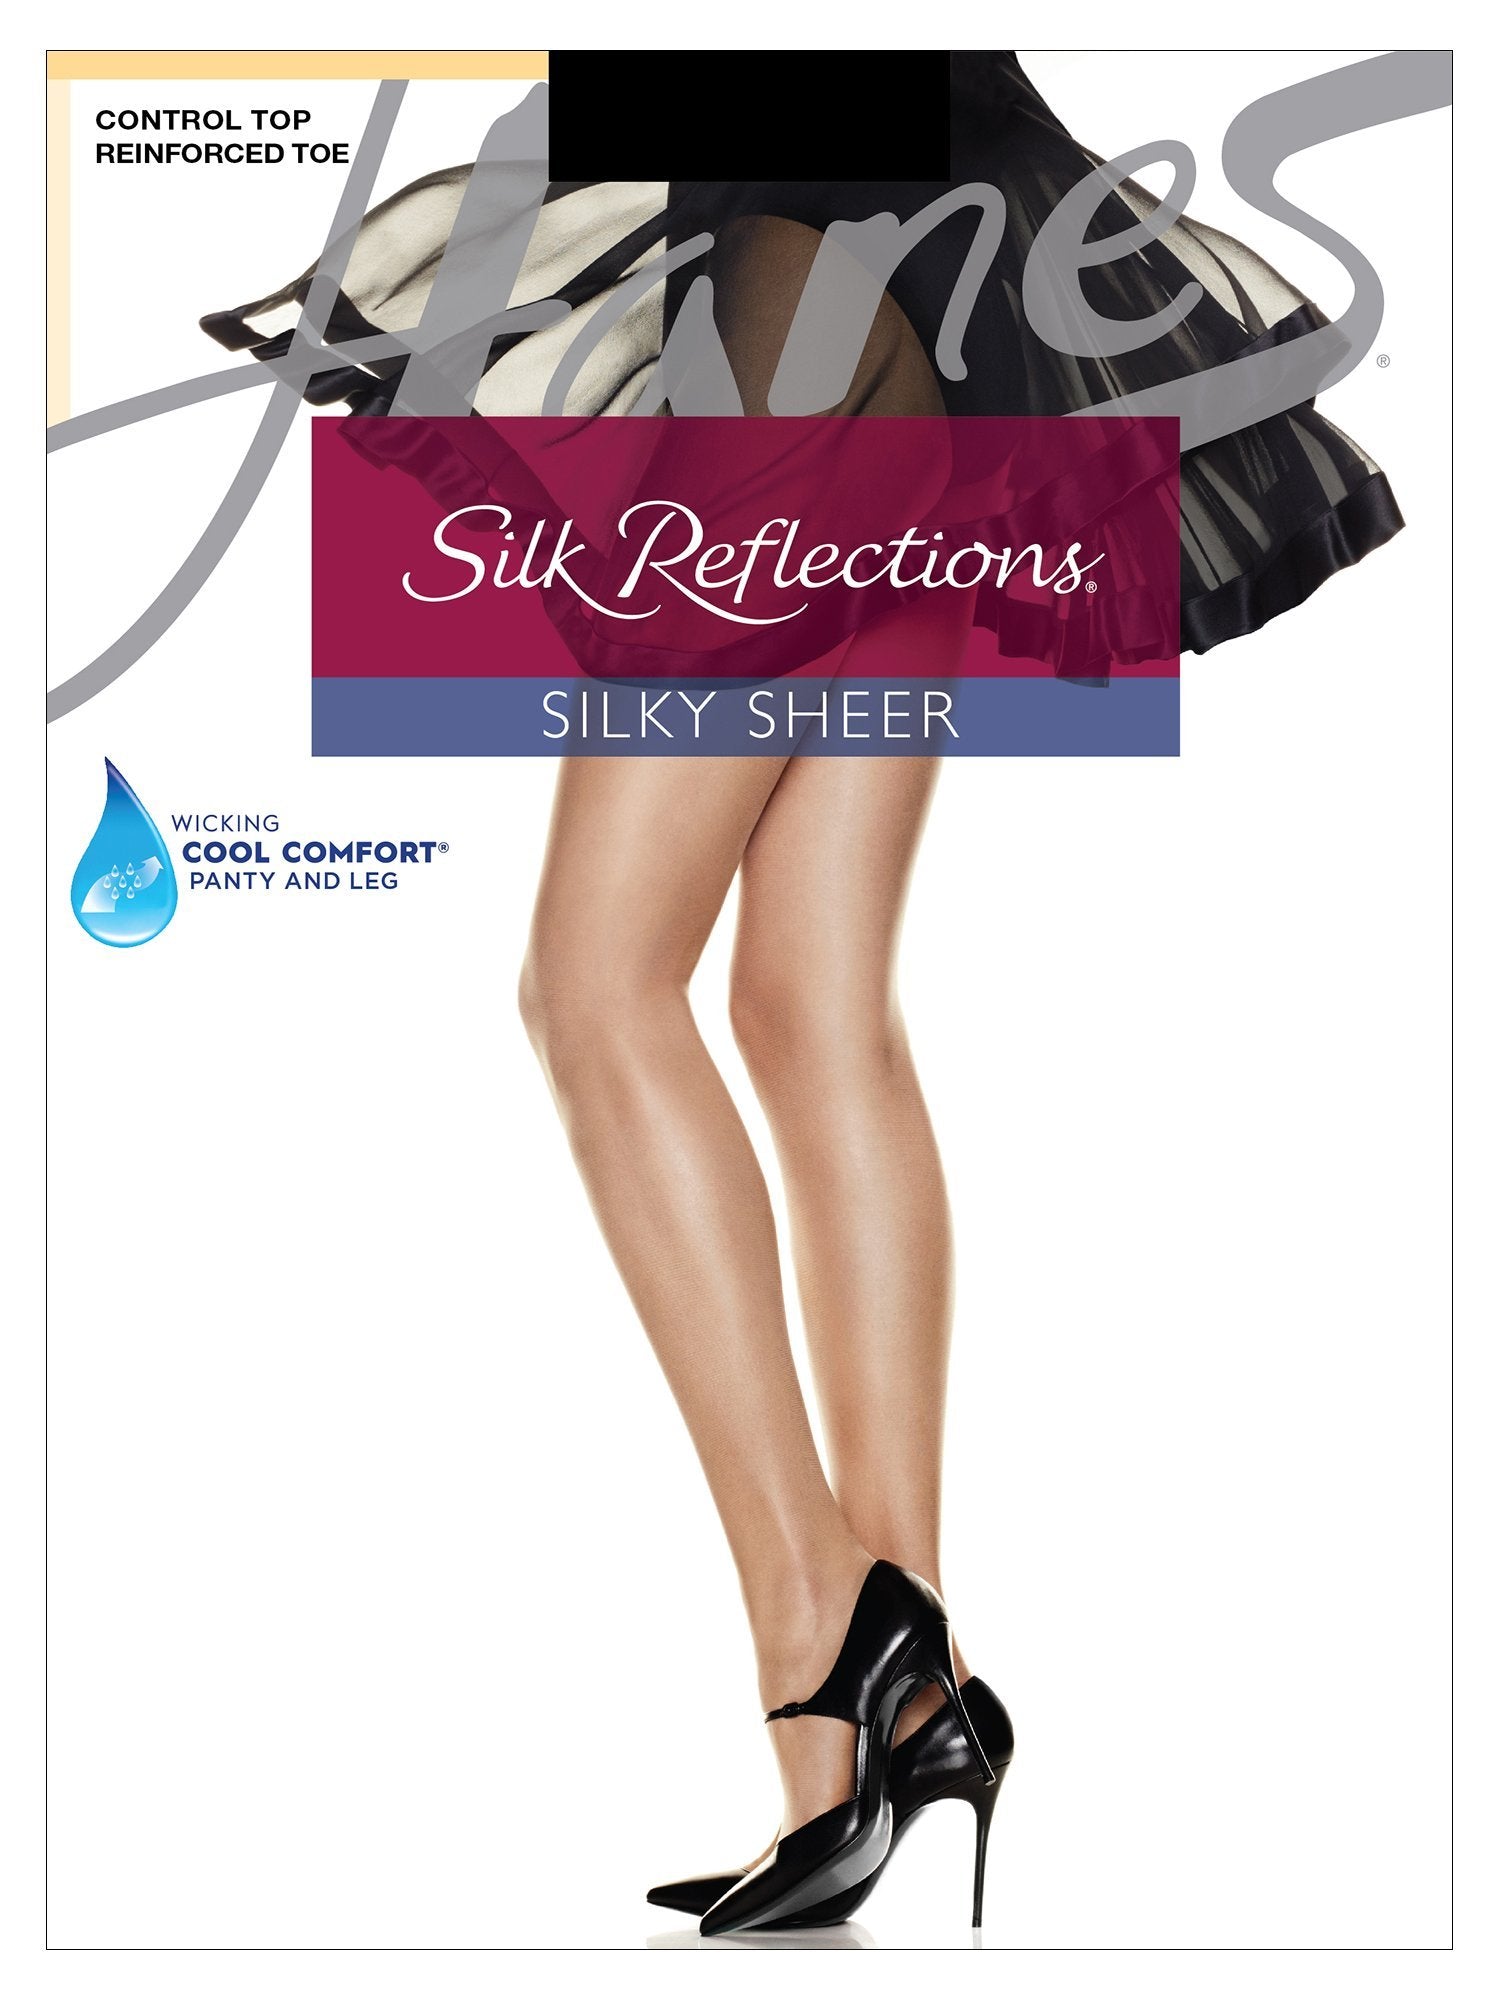 Shapermint Hanes Hosiery Hanes® Silk Reflections Control Top-Reinforced Toe Hosiery